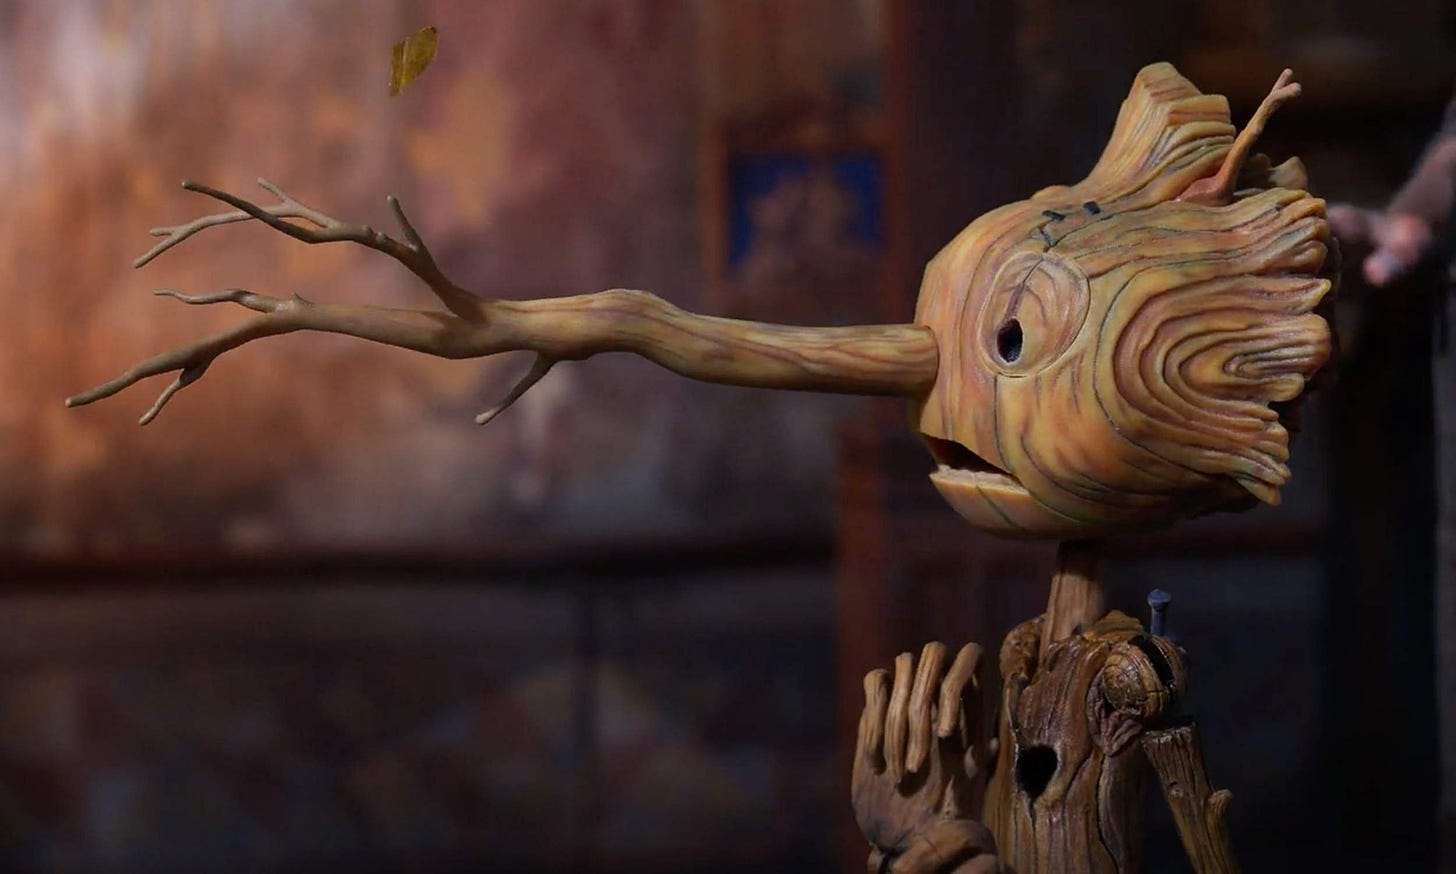 Immagine tratta dal film Pinocchio in cui si vede pinocchio con il naso cresciuto